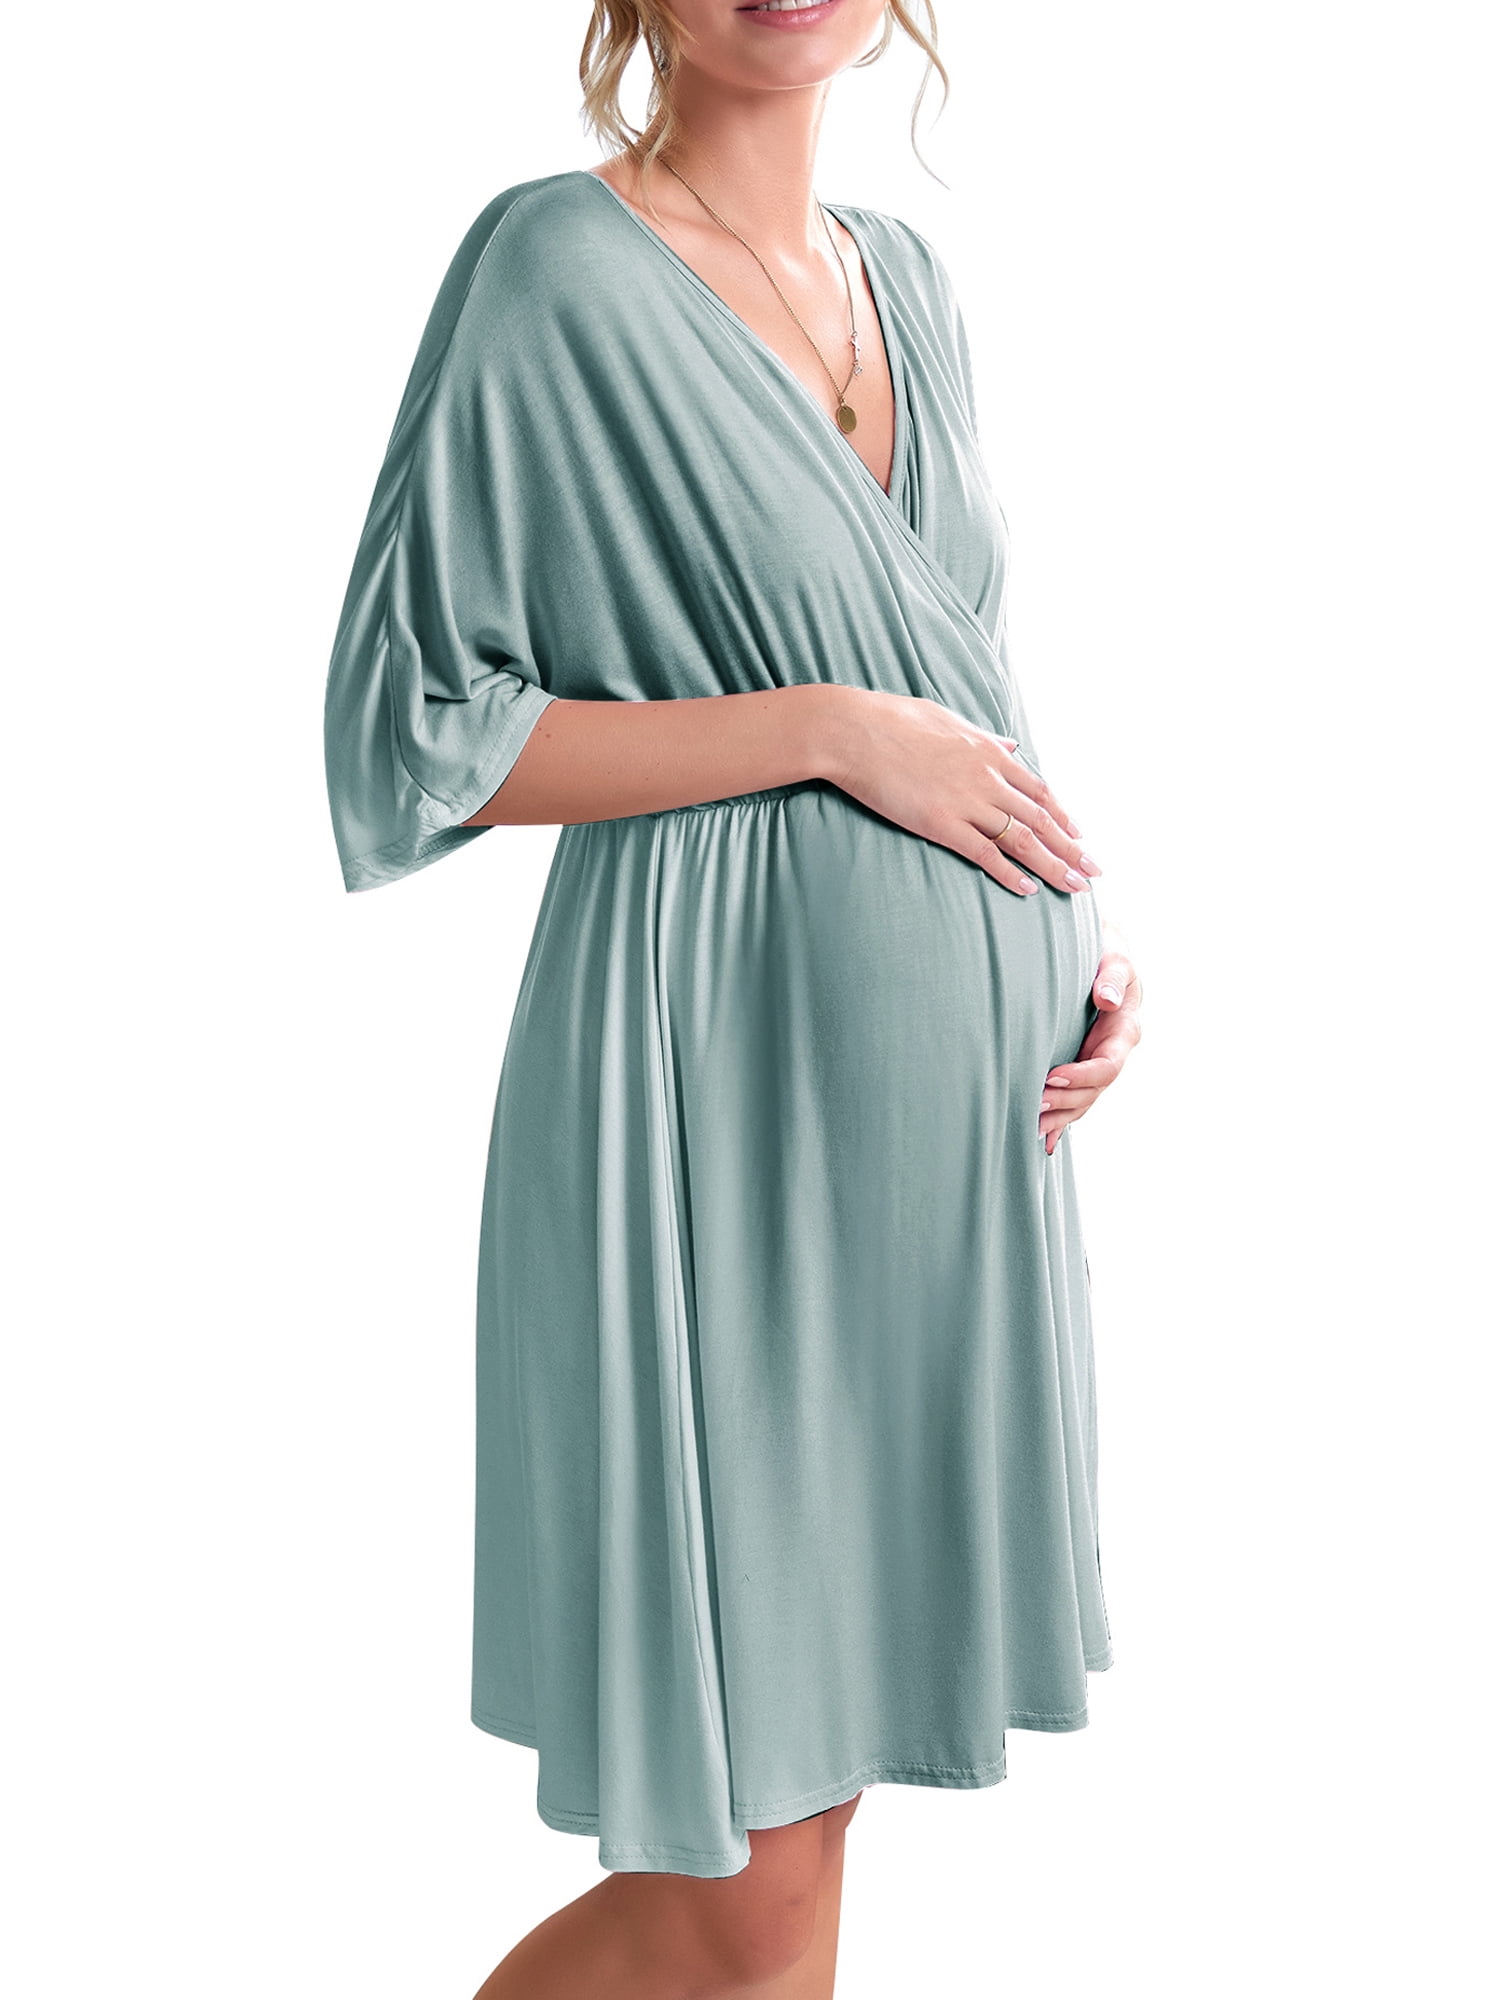 NOM Maternity Tessa Maternity Nursing Wrap Dress Medium Black 